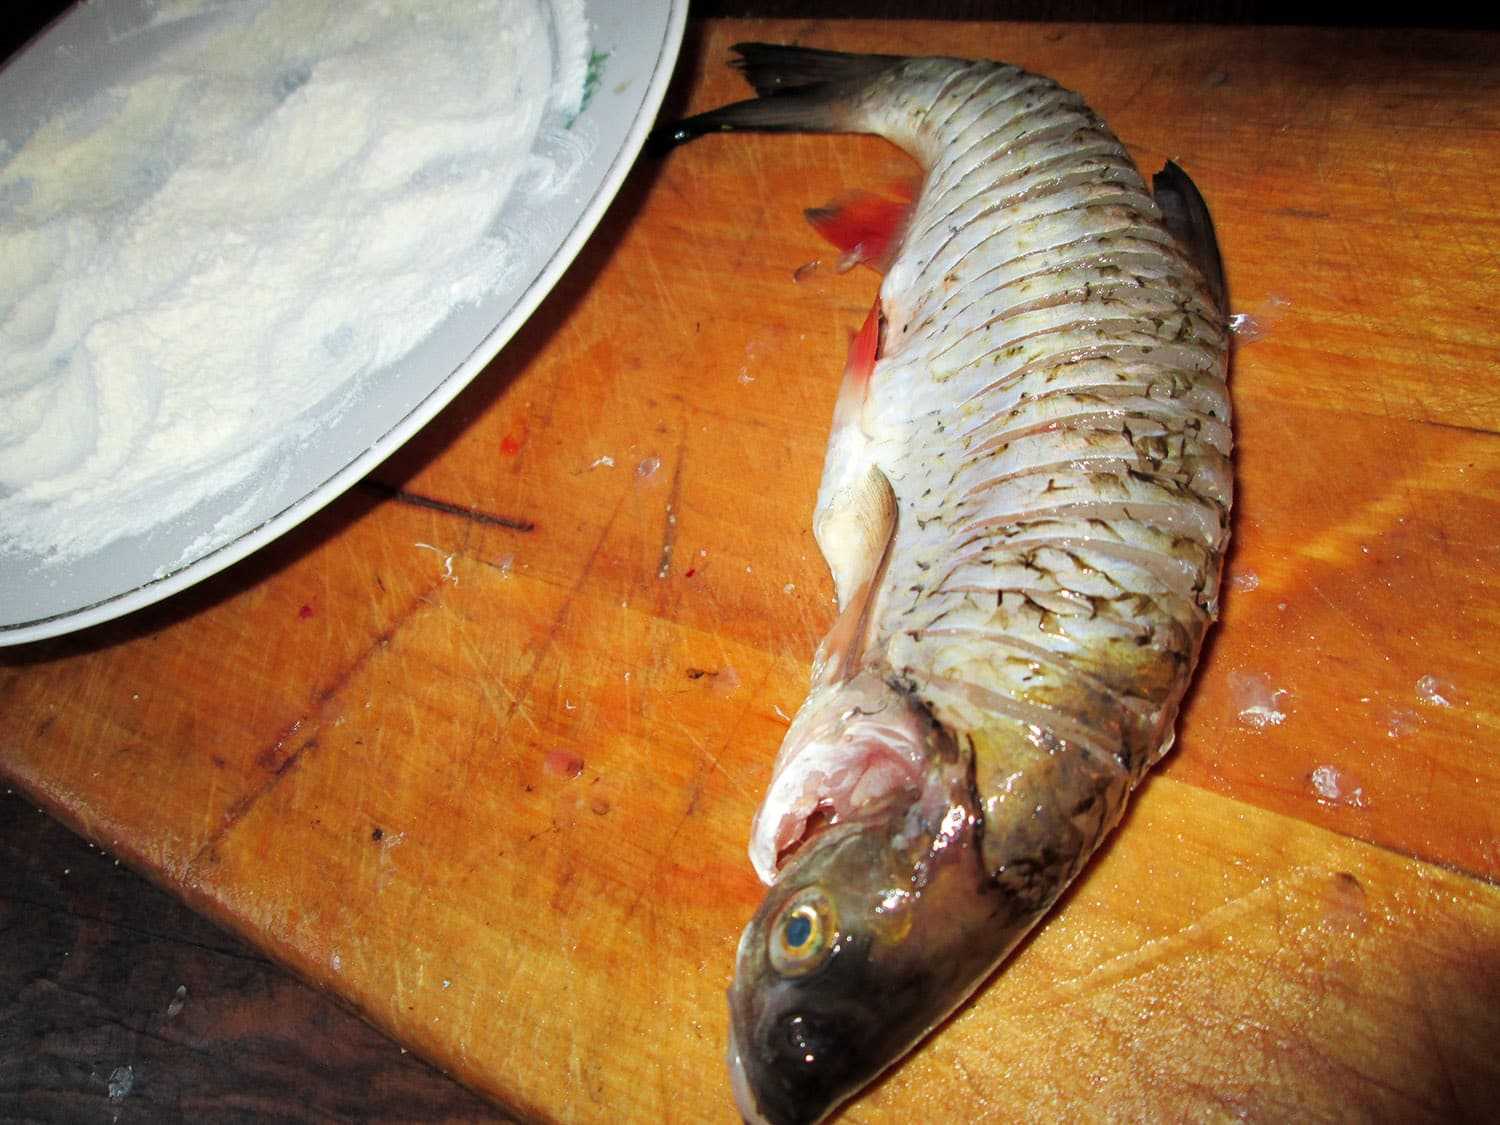 Голавль рыба. образ жизни и среда обитания рыбы голавль | животный мир